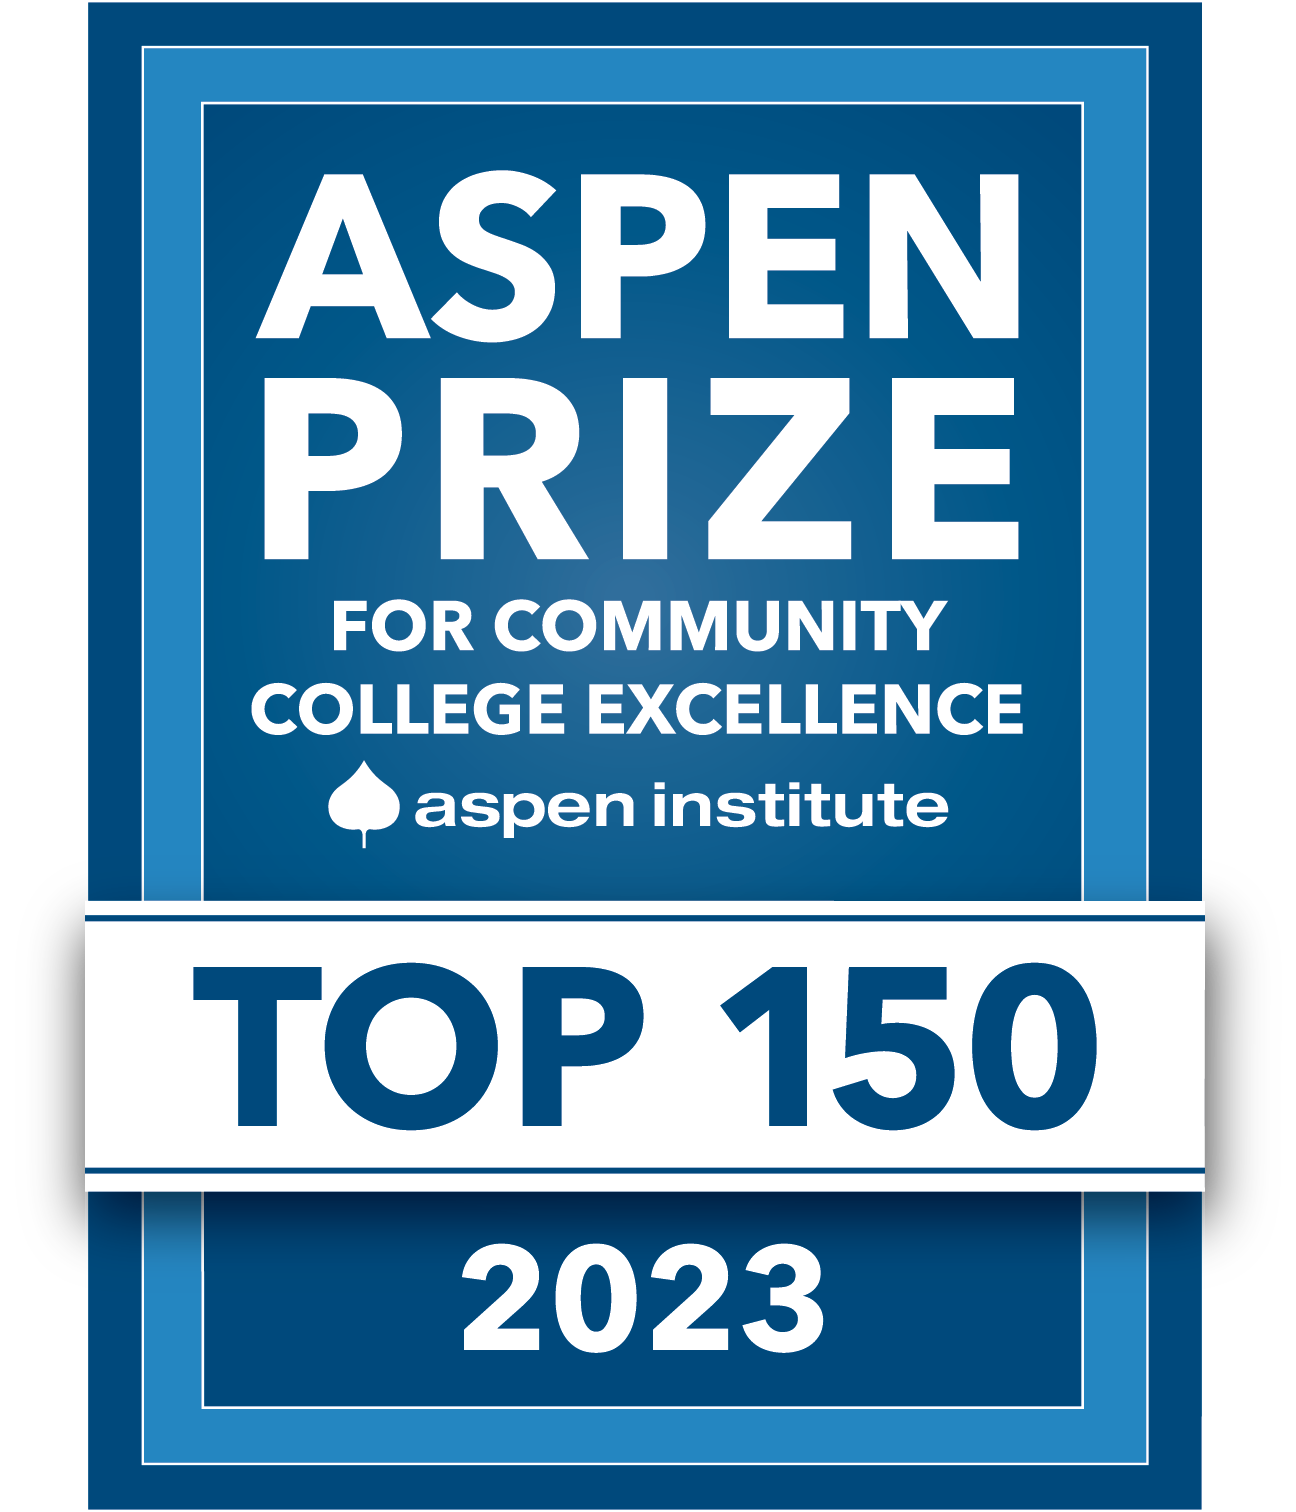 Aspen Prize Eliglible Top 150